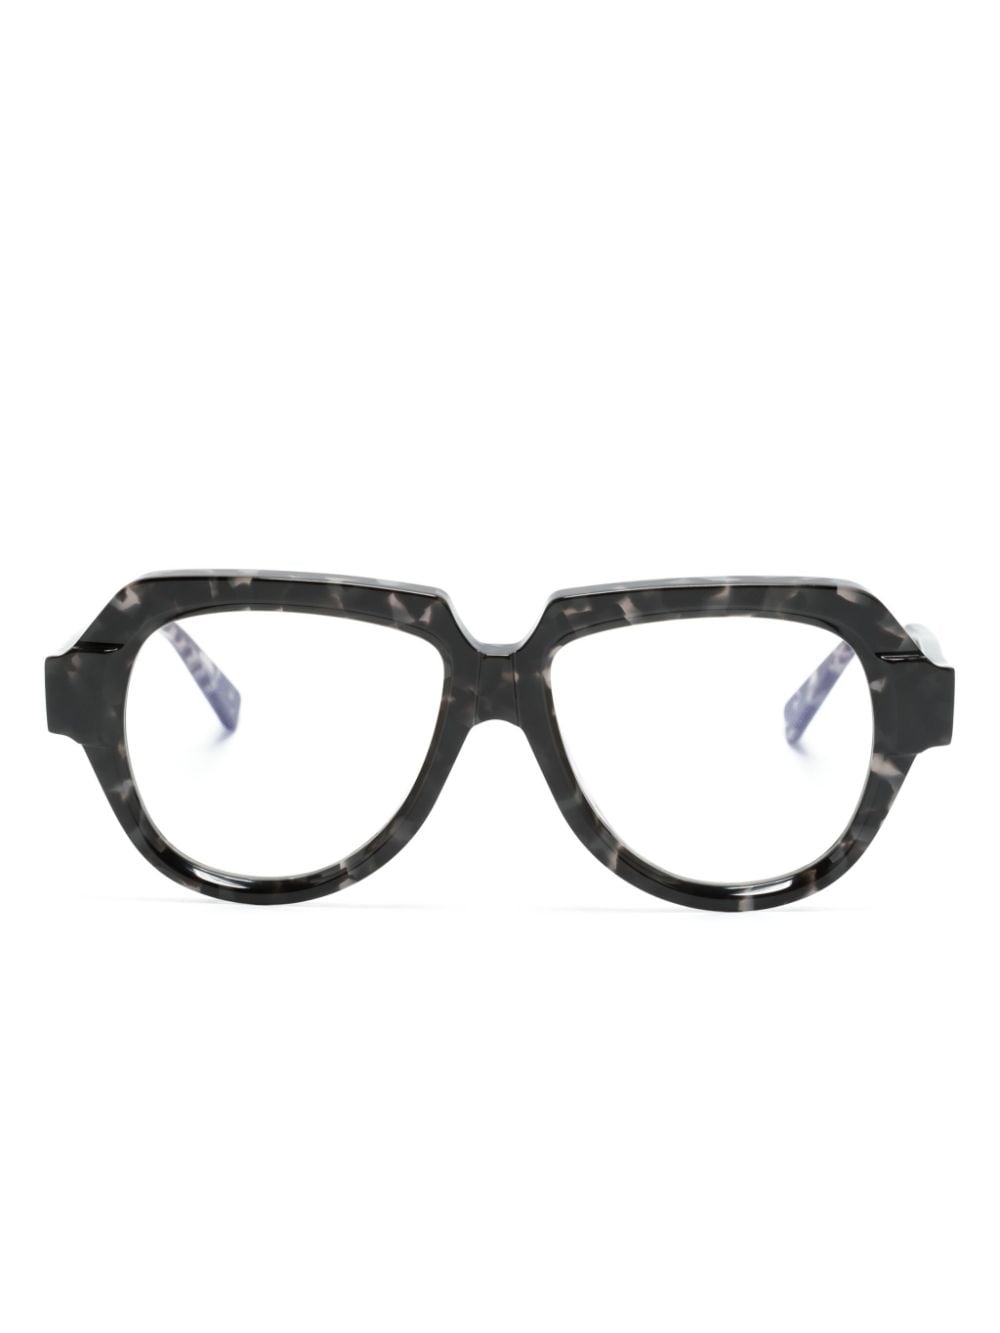 Kuboraum K37 Pilot-frame Glasses In Black